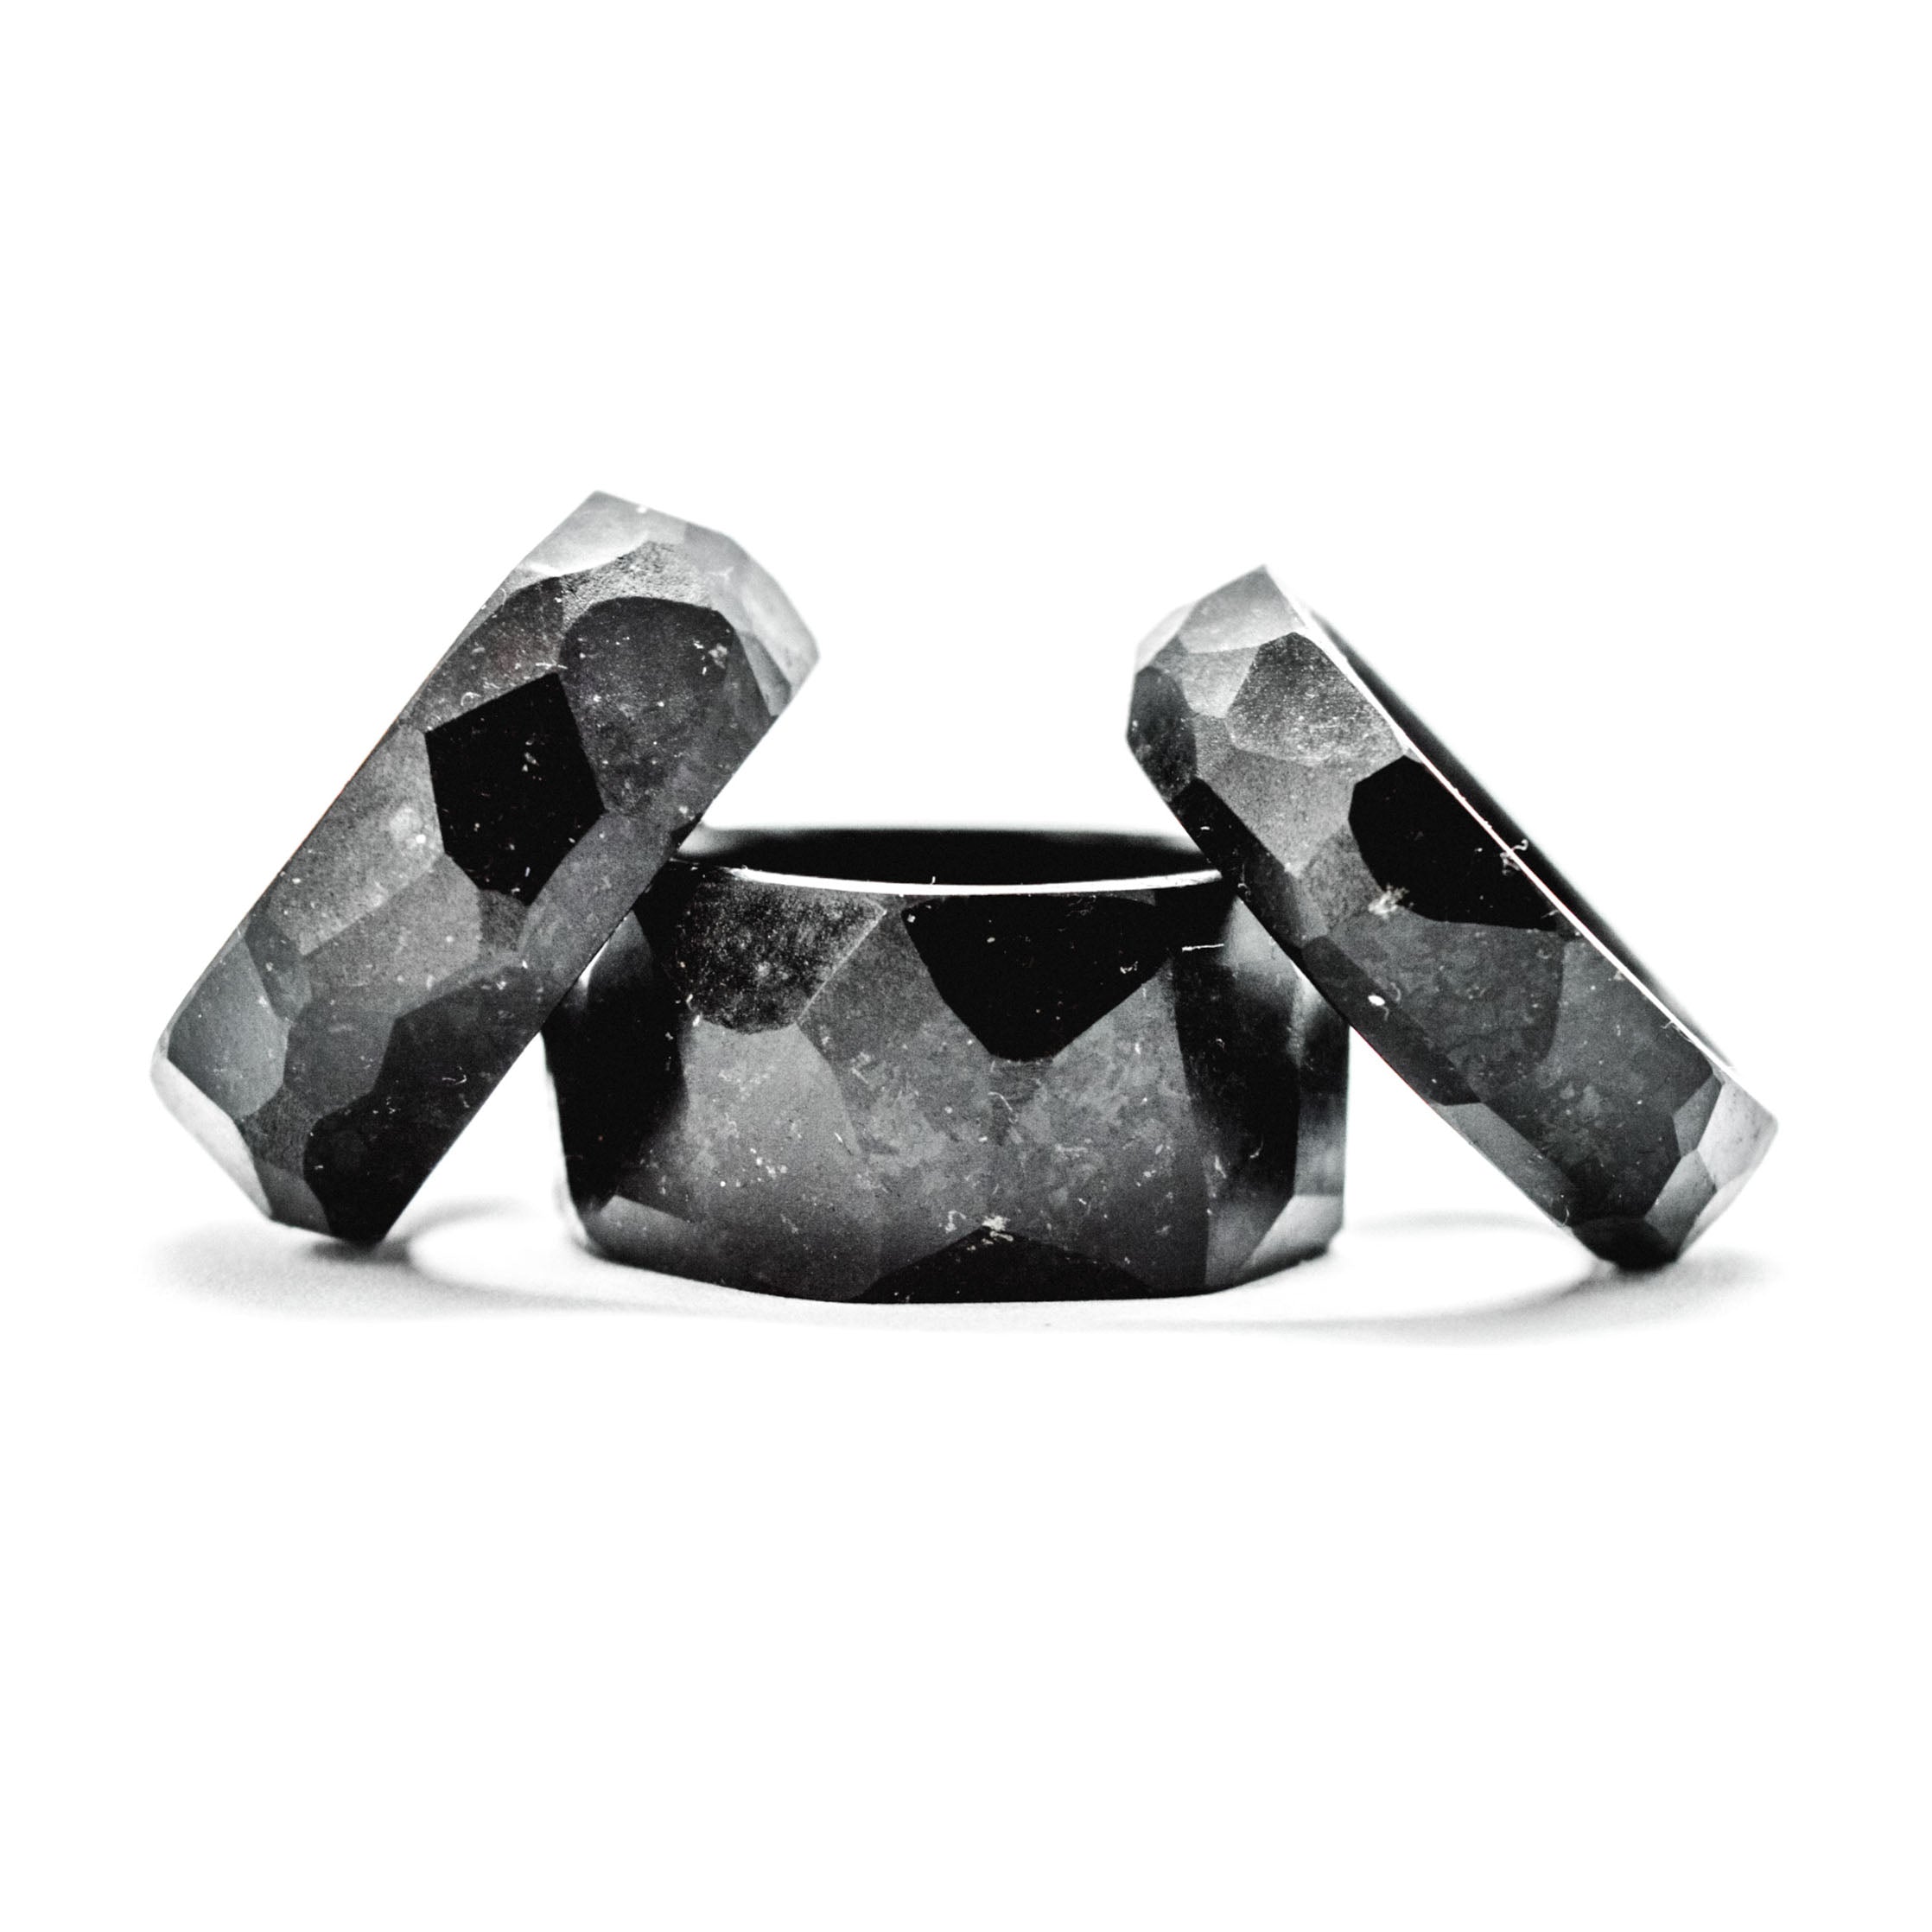 Musta sormus jonka materiaalina on suomalainen kivi. Sisukasta suomalaista mustaa maagista kiveä! Kivikoru. joka on valmistettu täysin käsityönä näyttäväksi geometriseksi mattamustaksi sormukseksi.